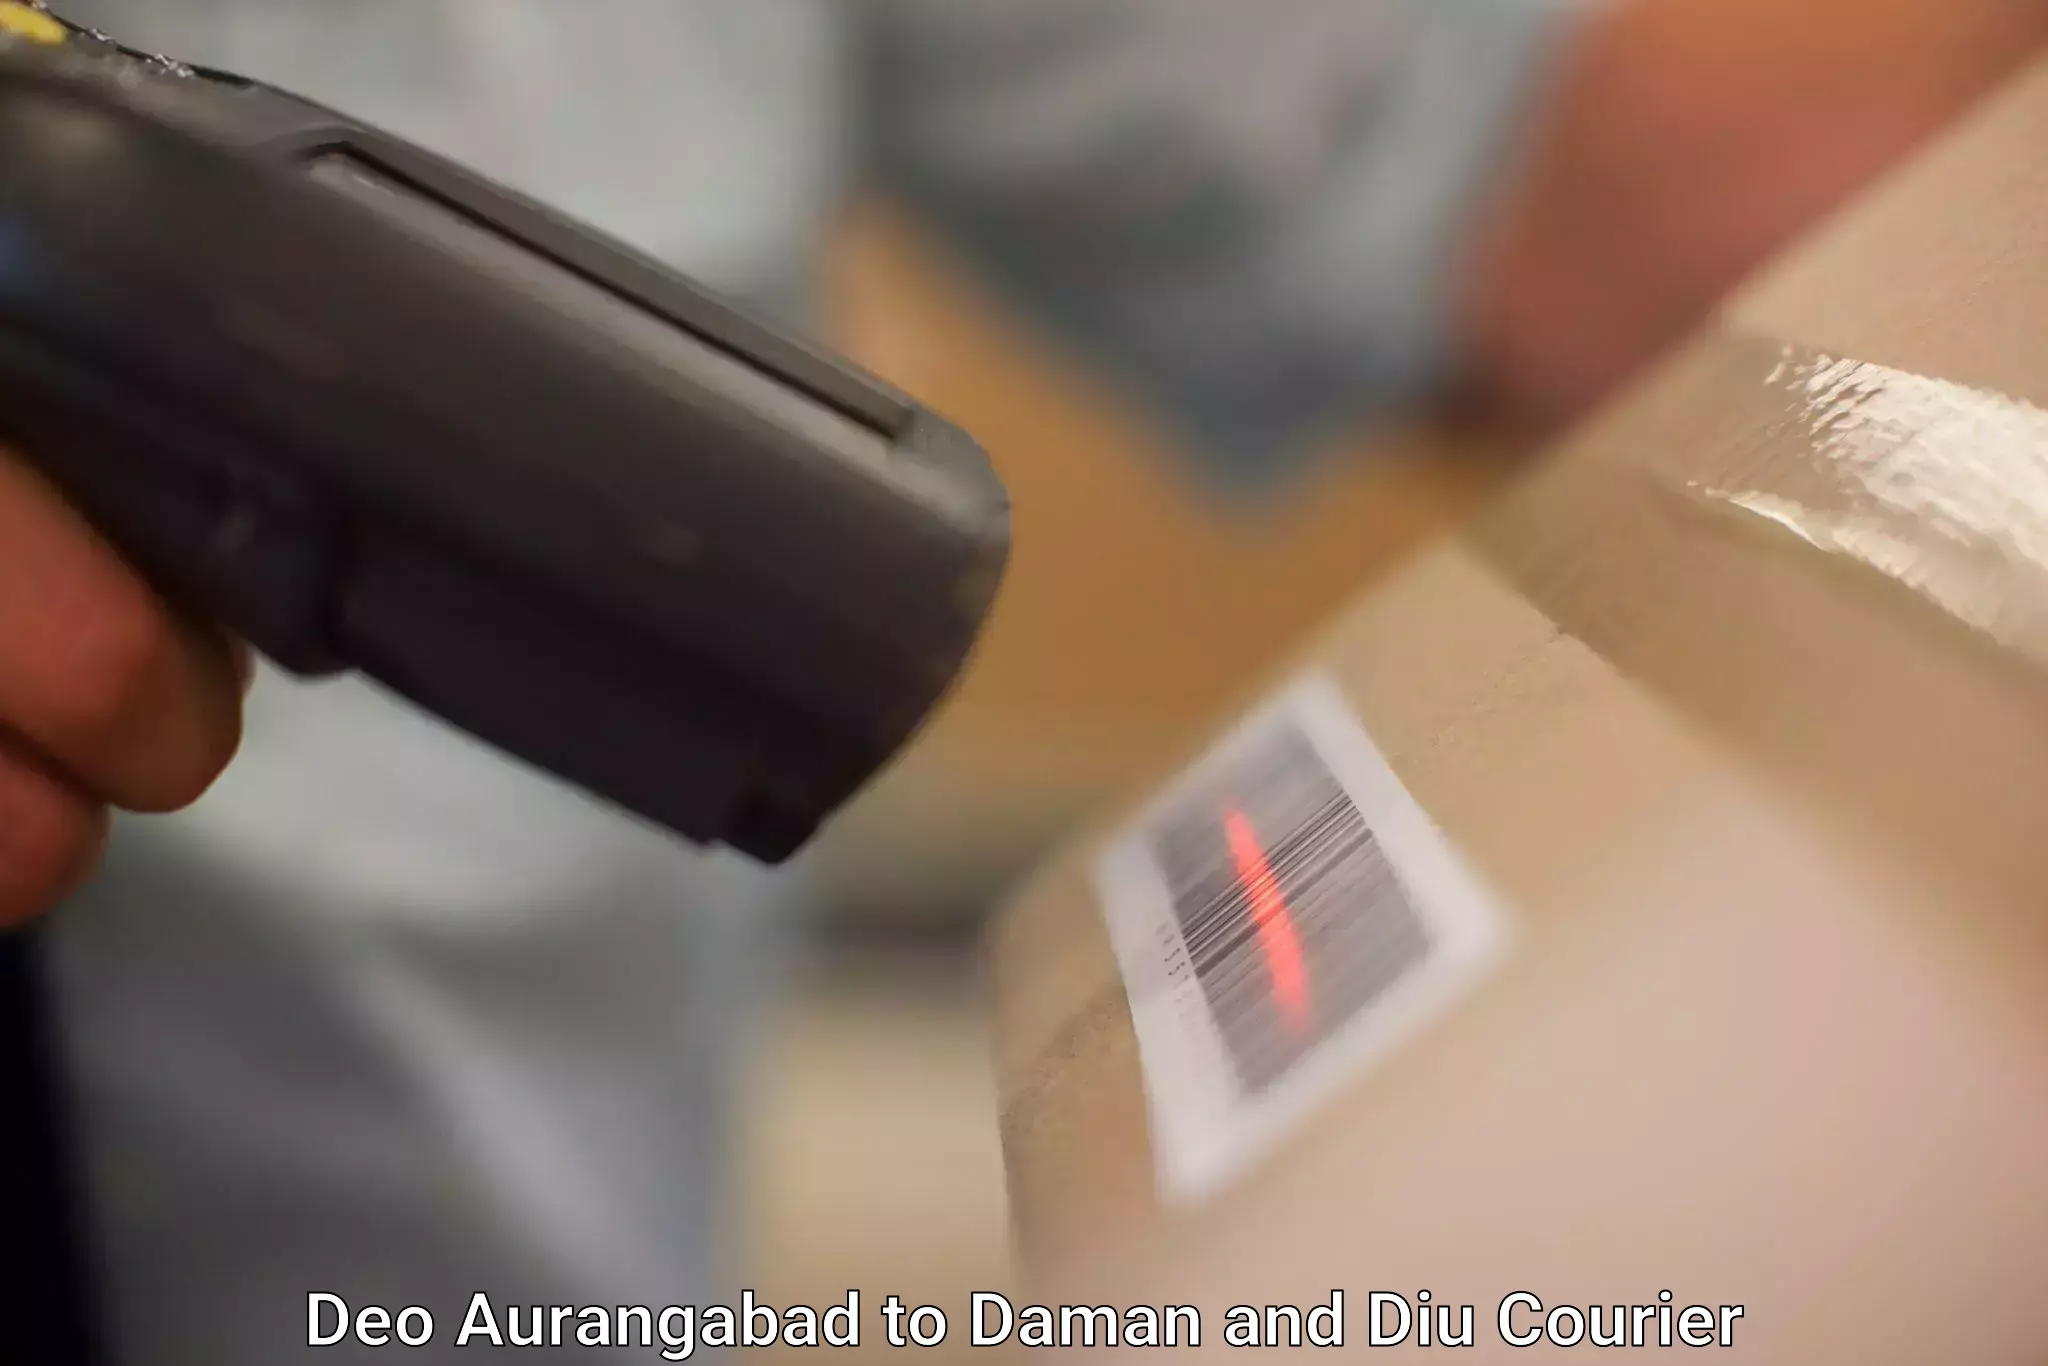 Courier service partnerships Deo Aurangabad to Daman and Diu